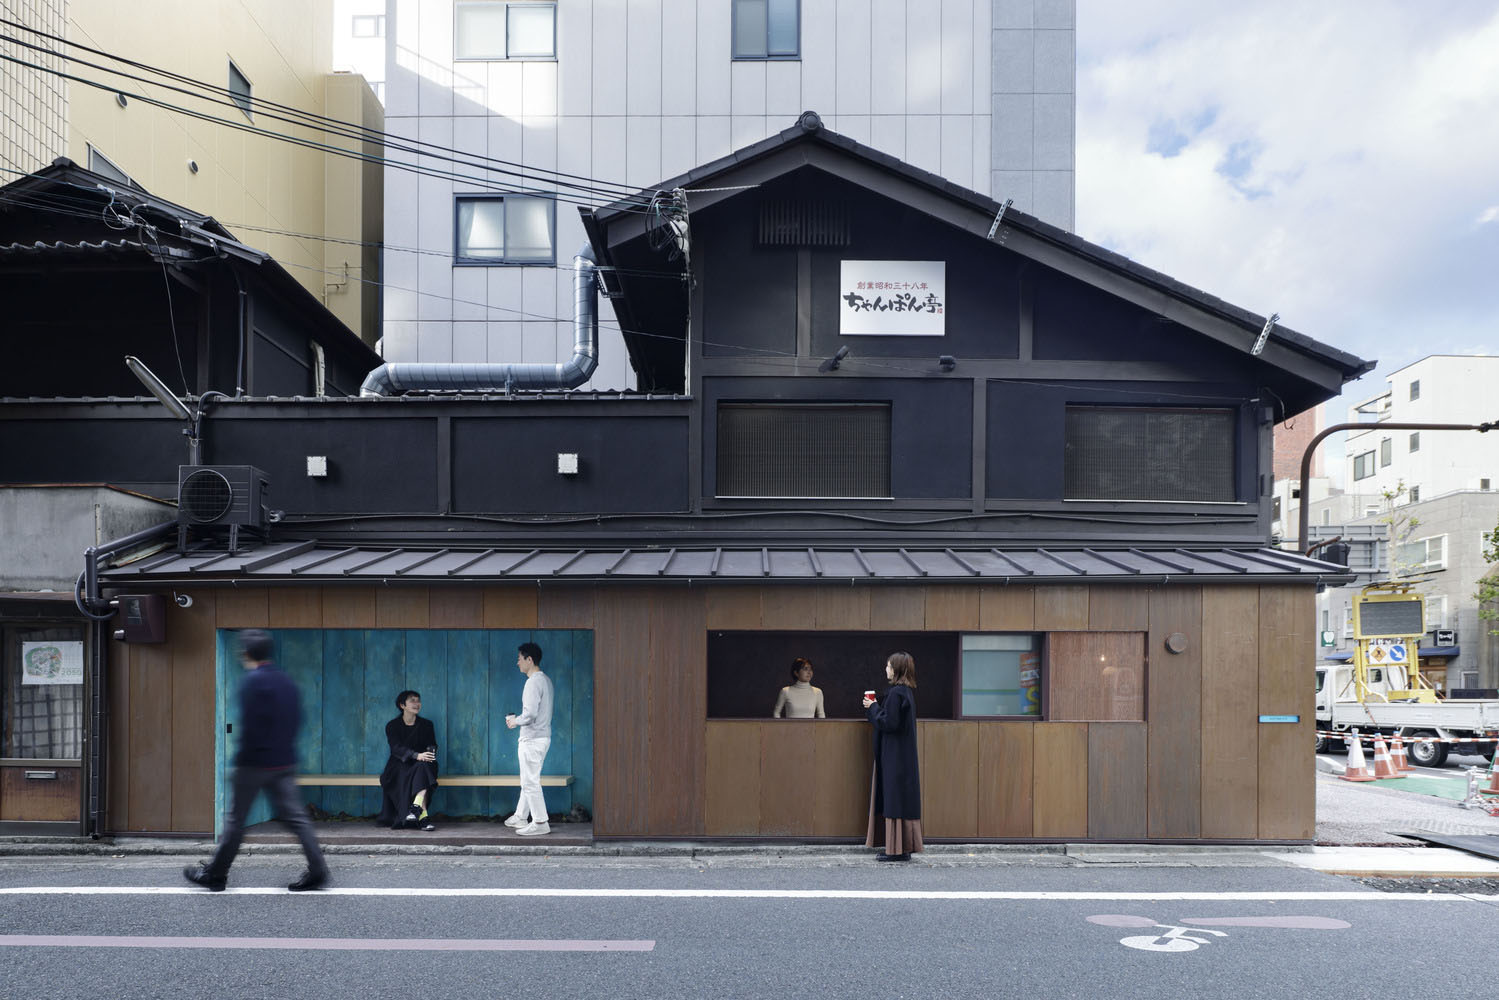 日本,京都,咖啡厅设计案例,极简主义,街边店,10㎡,咖啡厅设计,G architects studio,咖啡店设计